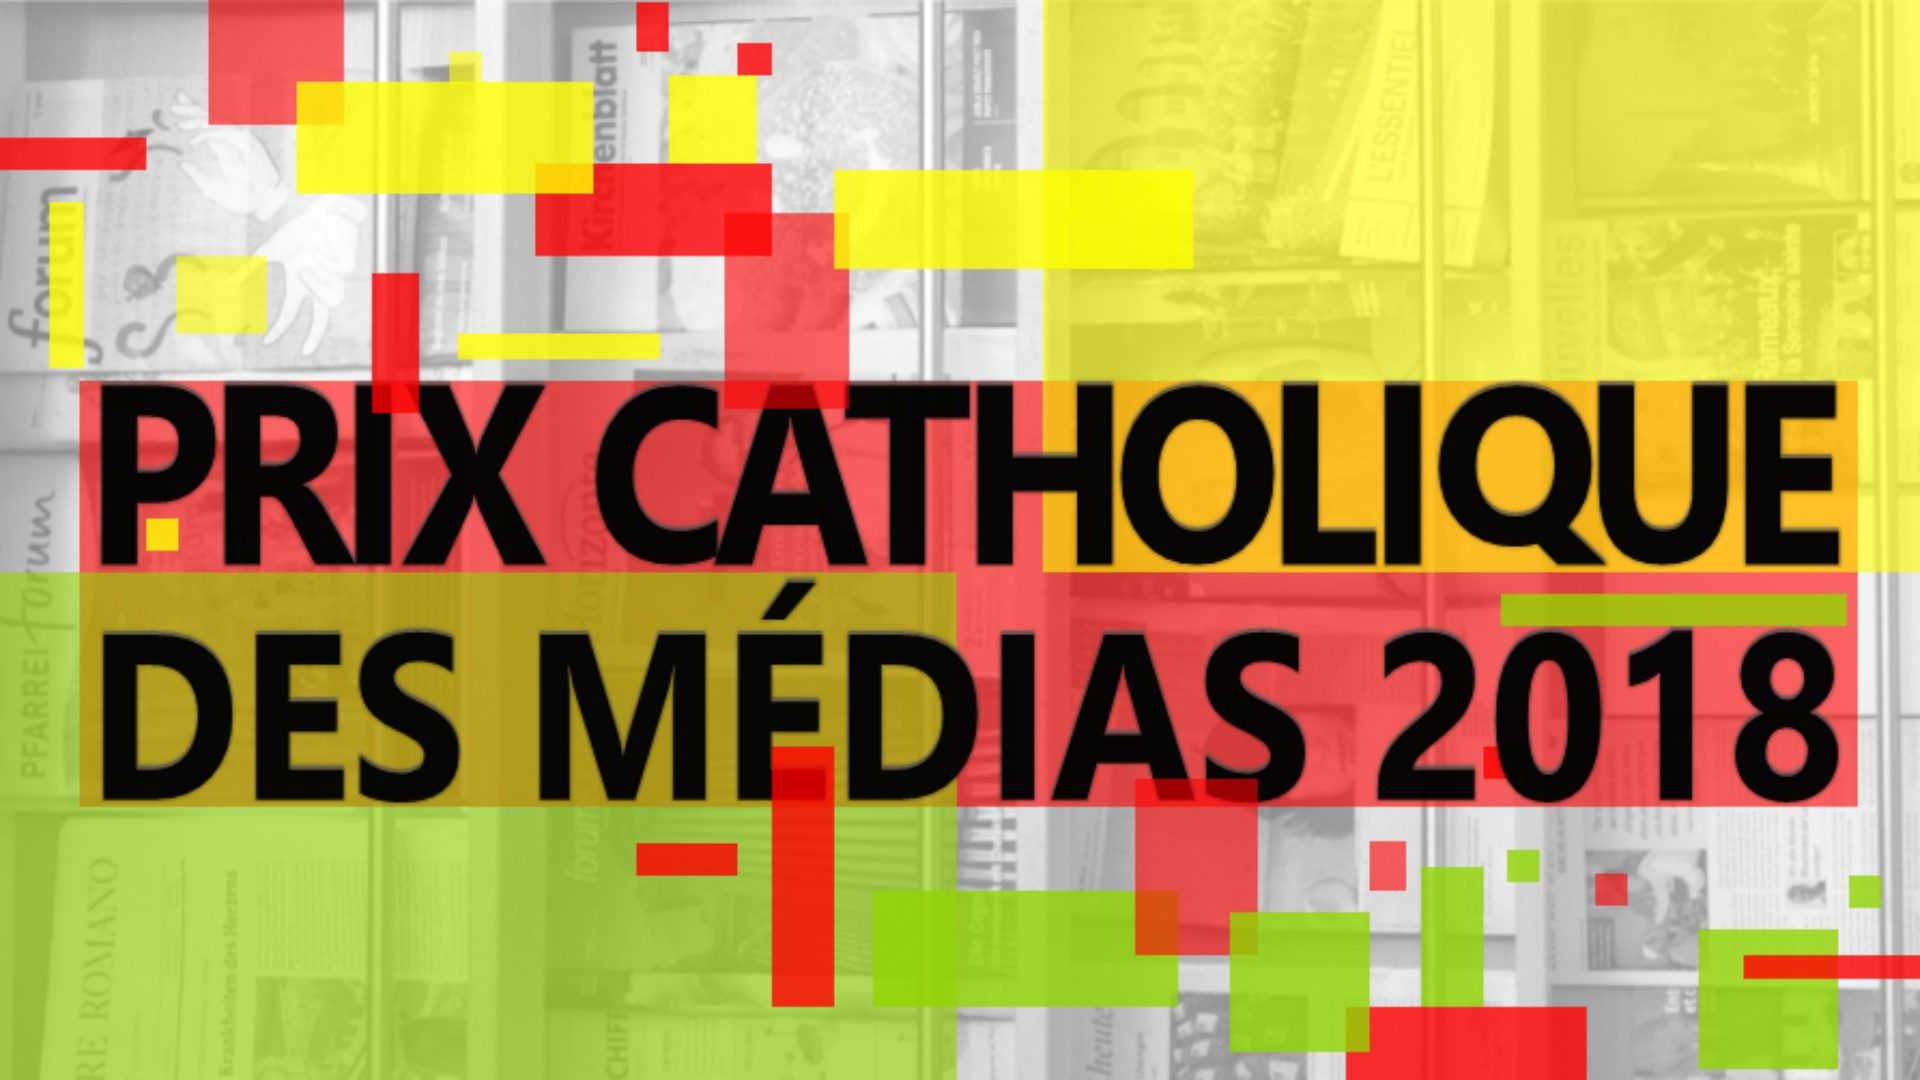 Le Prix catholique des médias est relancé pour la première fois depuis 2013 (image:CES)